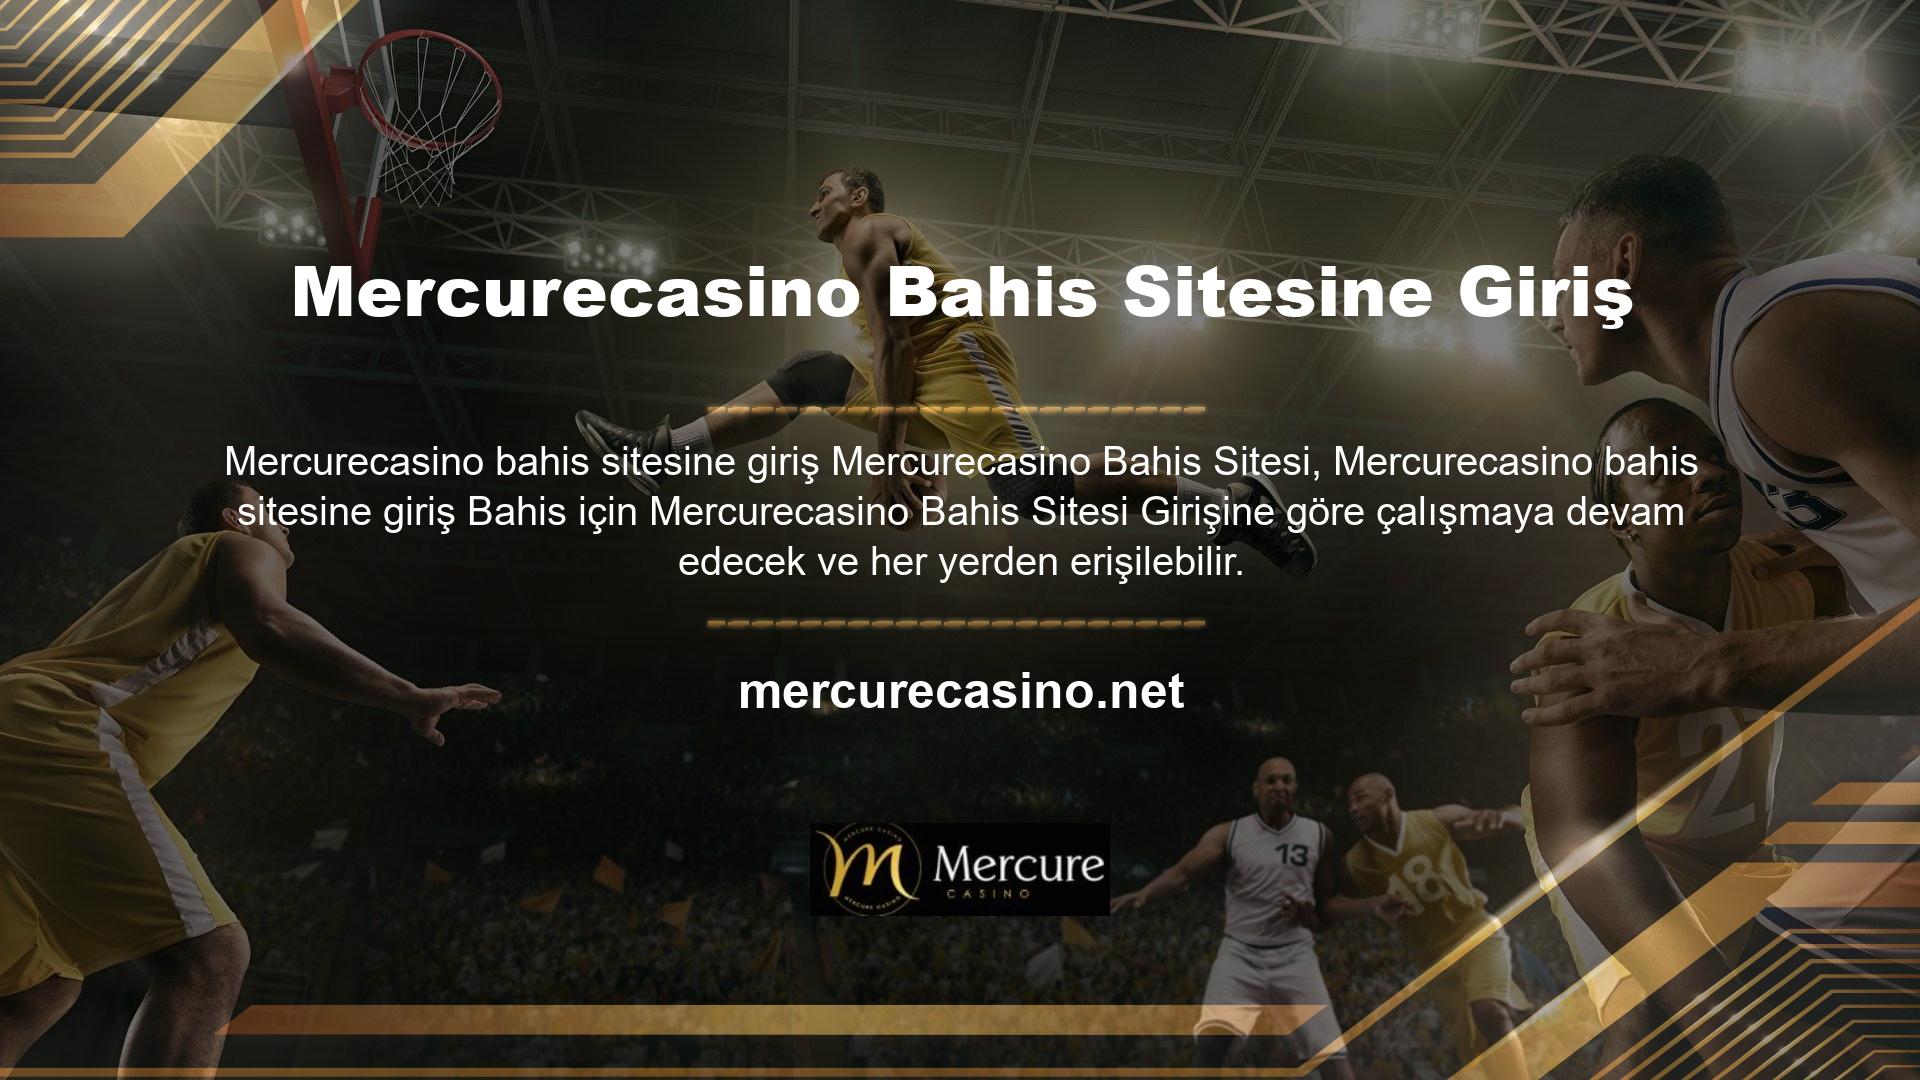 Mercurecasino bahis sitesi Avrupa'da kurulmuştur ve kullanıcılarına en iyi hizmeti vermeye devam etmektedir